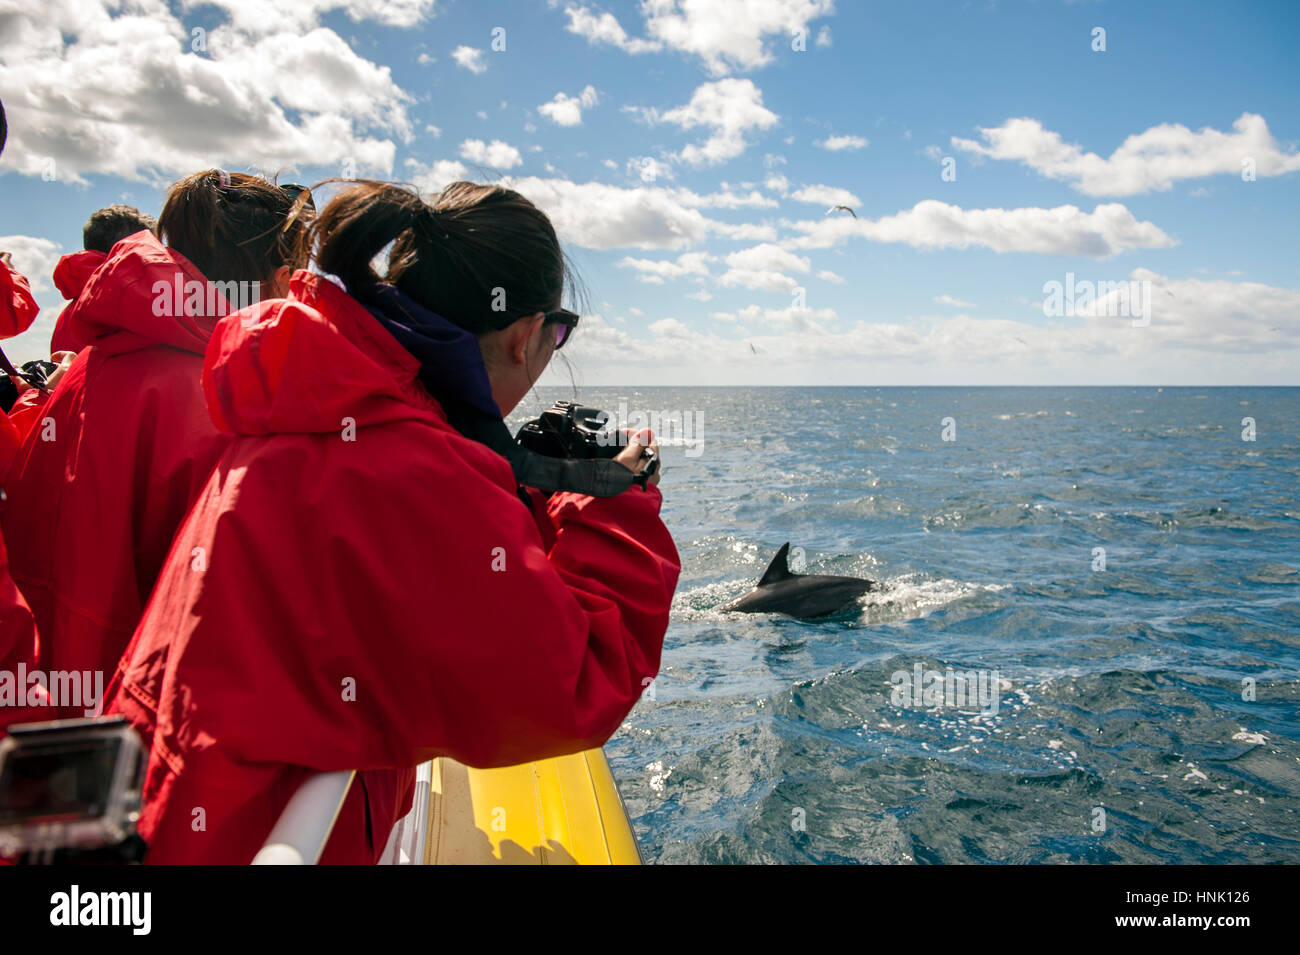 Los turistas fotografiar delfines en la costa de la Península de Tasmania. Los turistas están en un crucero con pennicott desierto viajes. Foto de stock